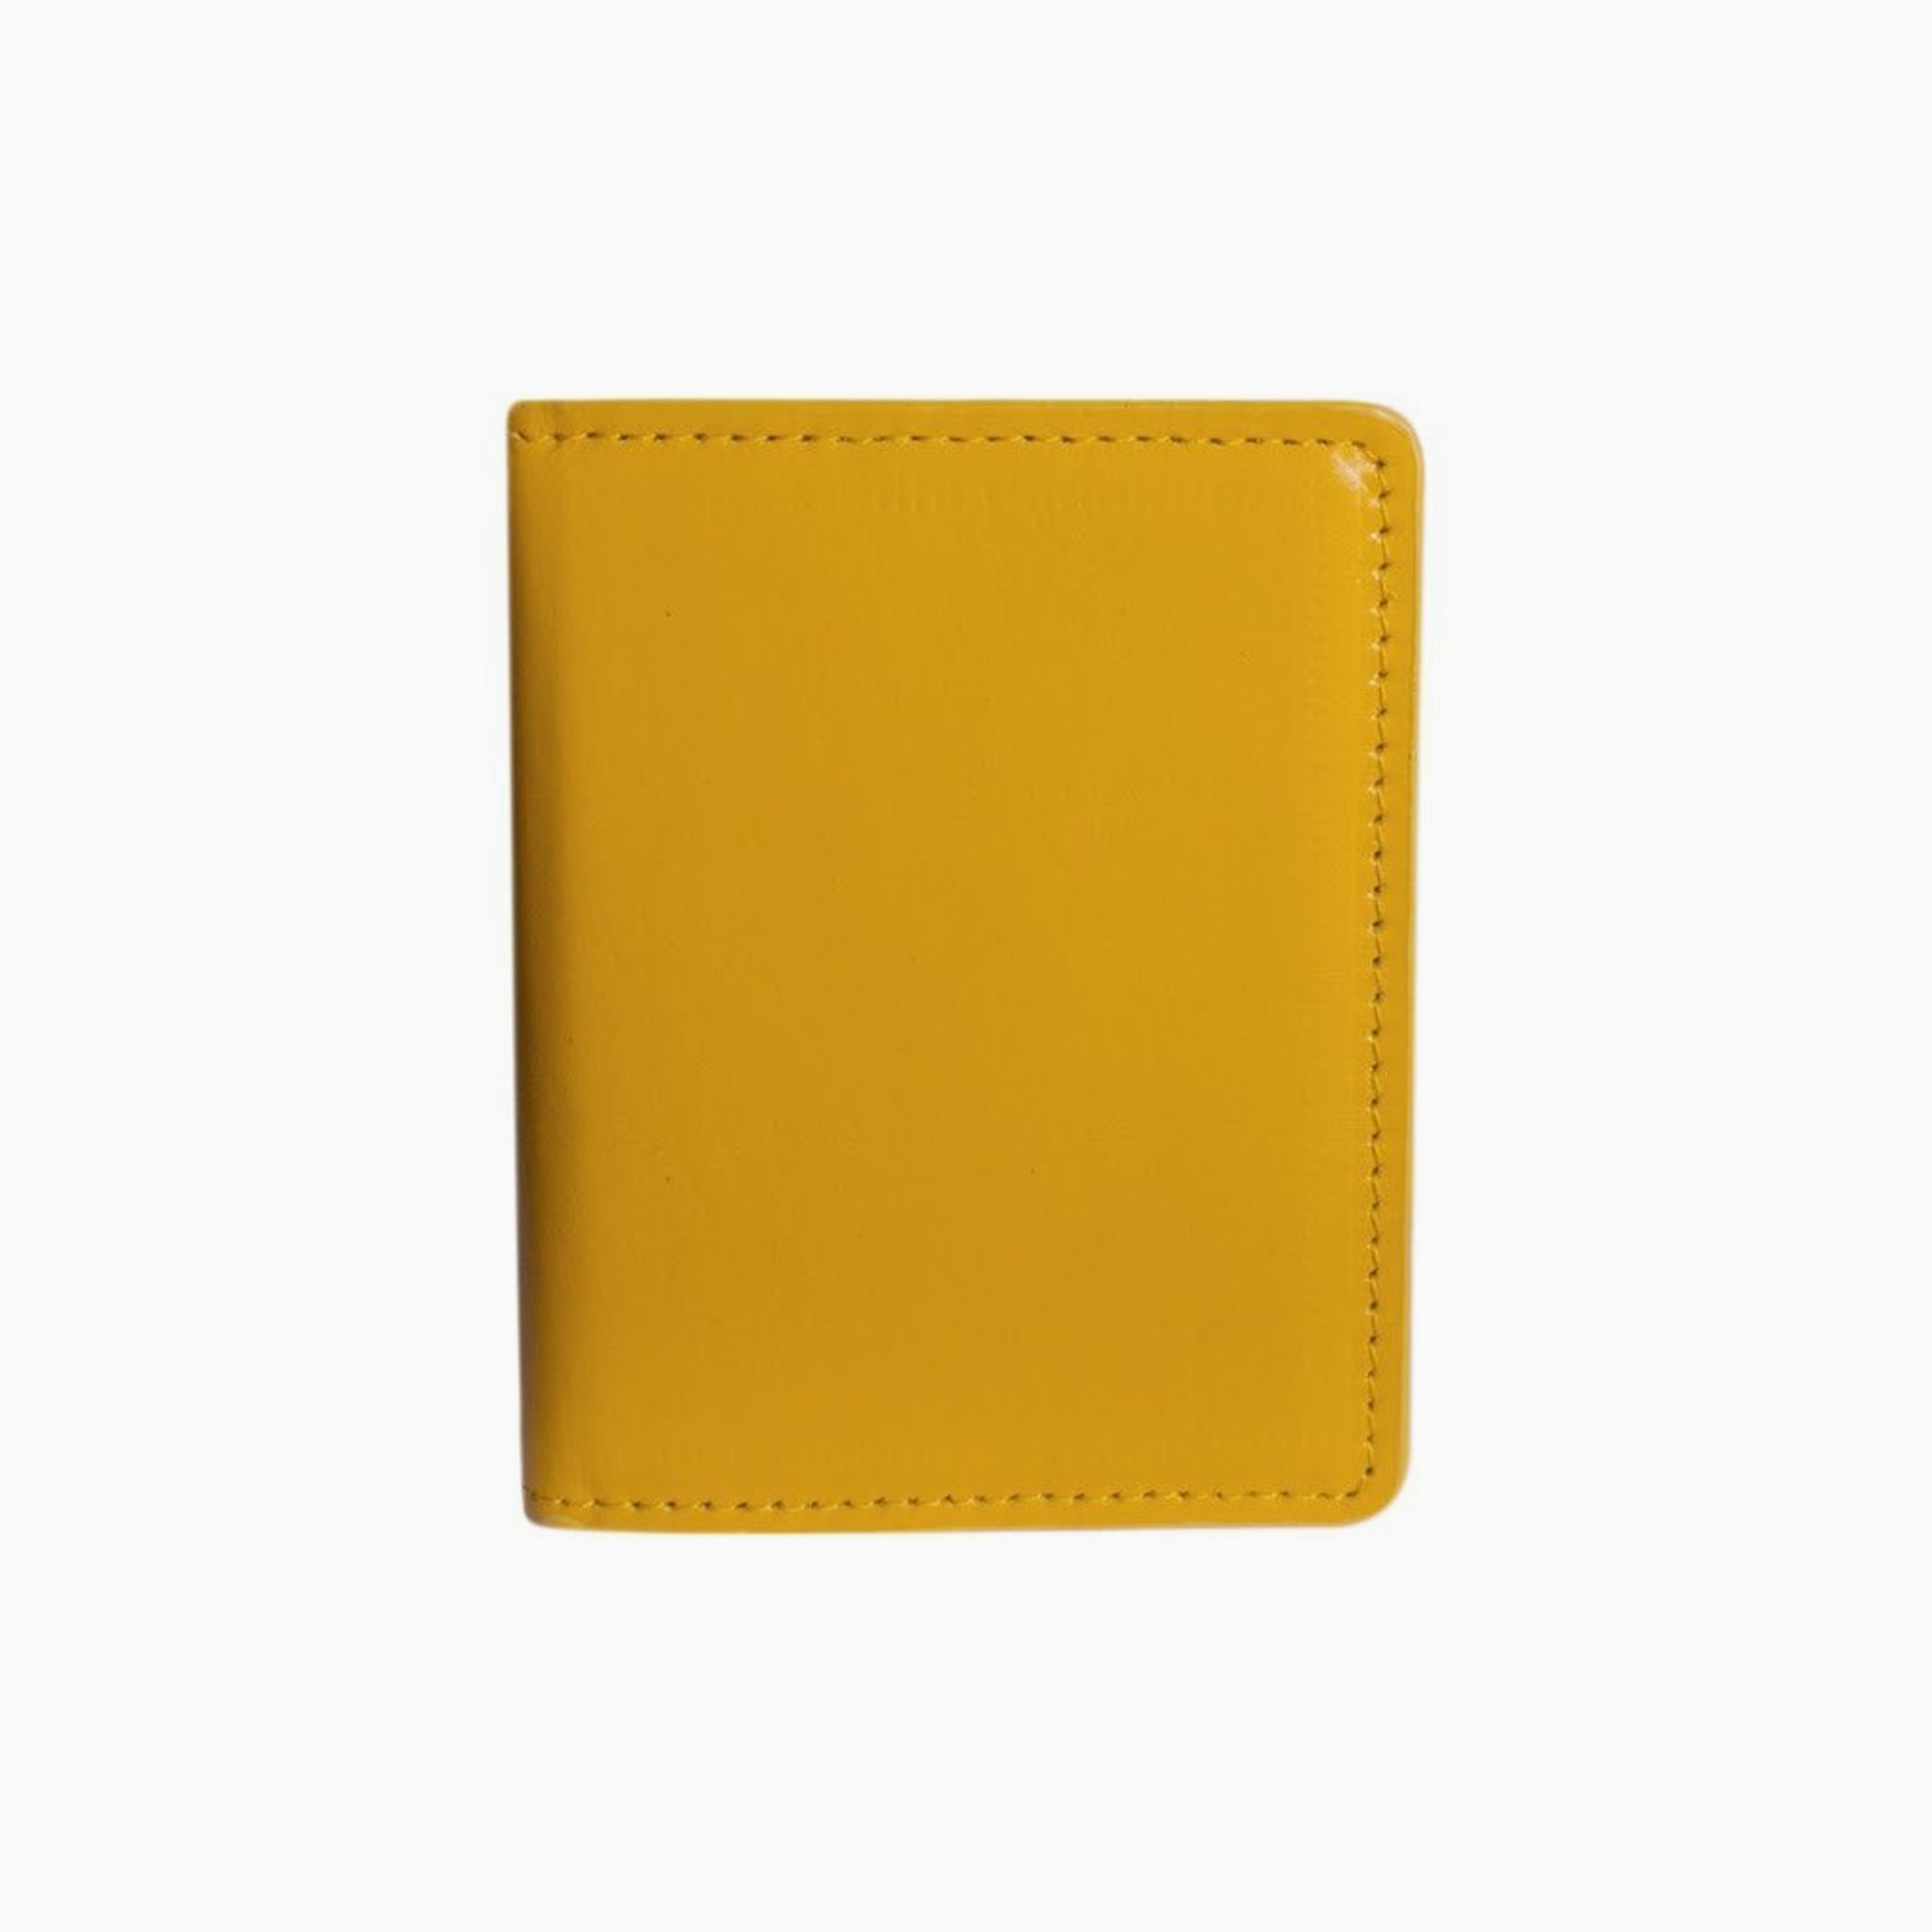 Card Wallet - Mustard